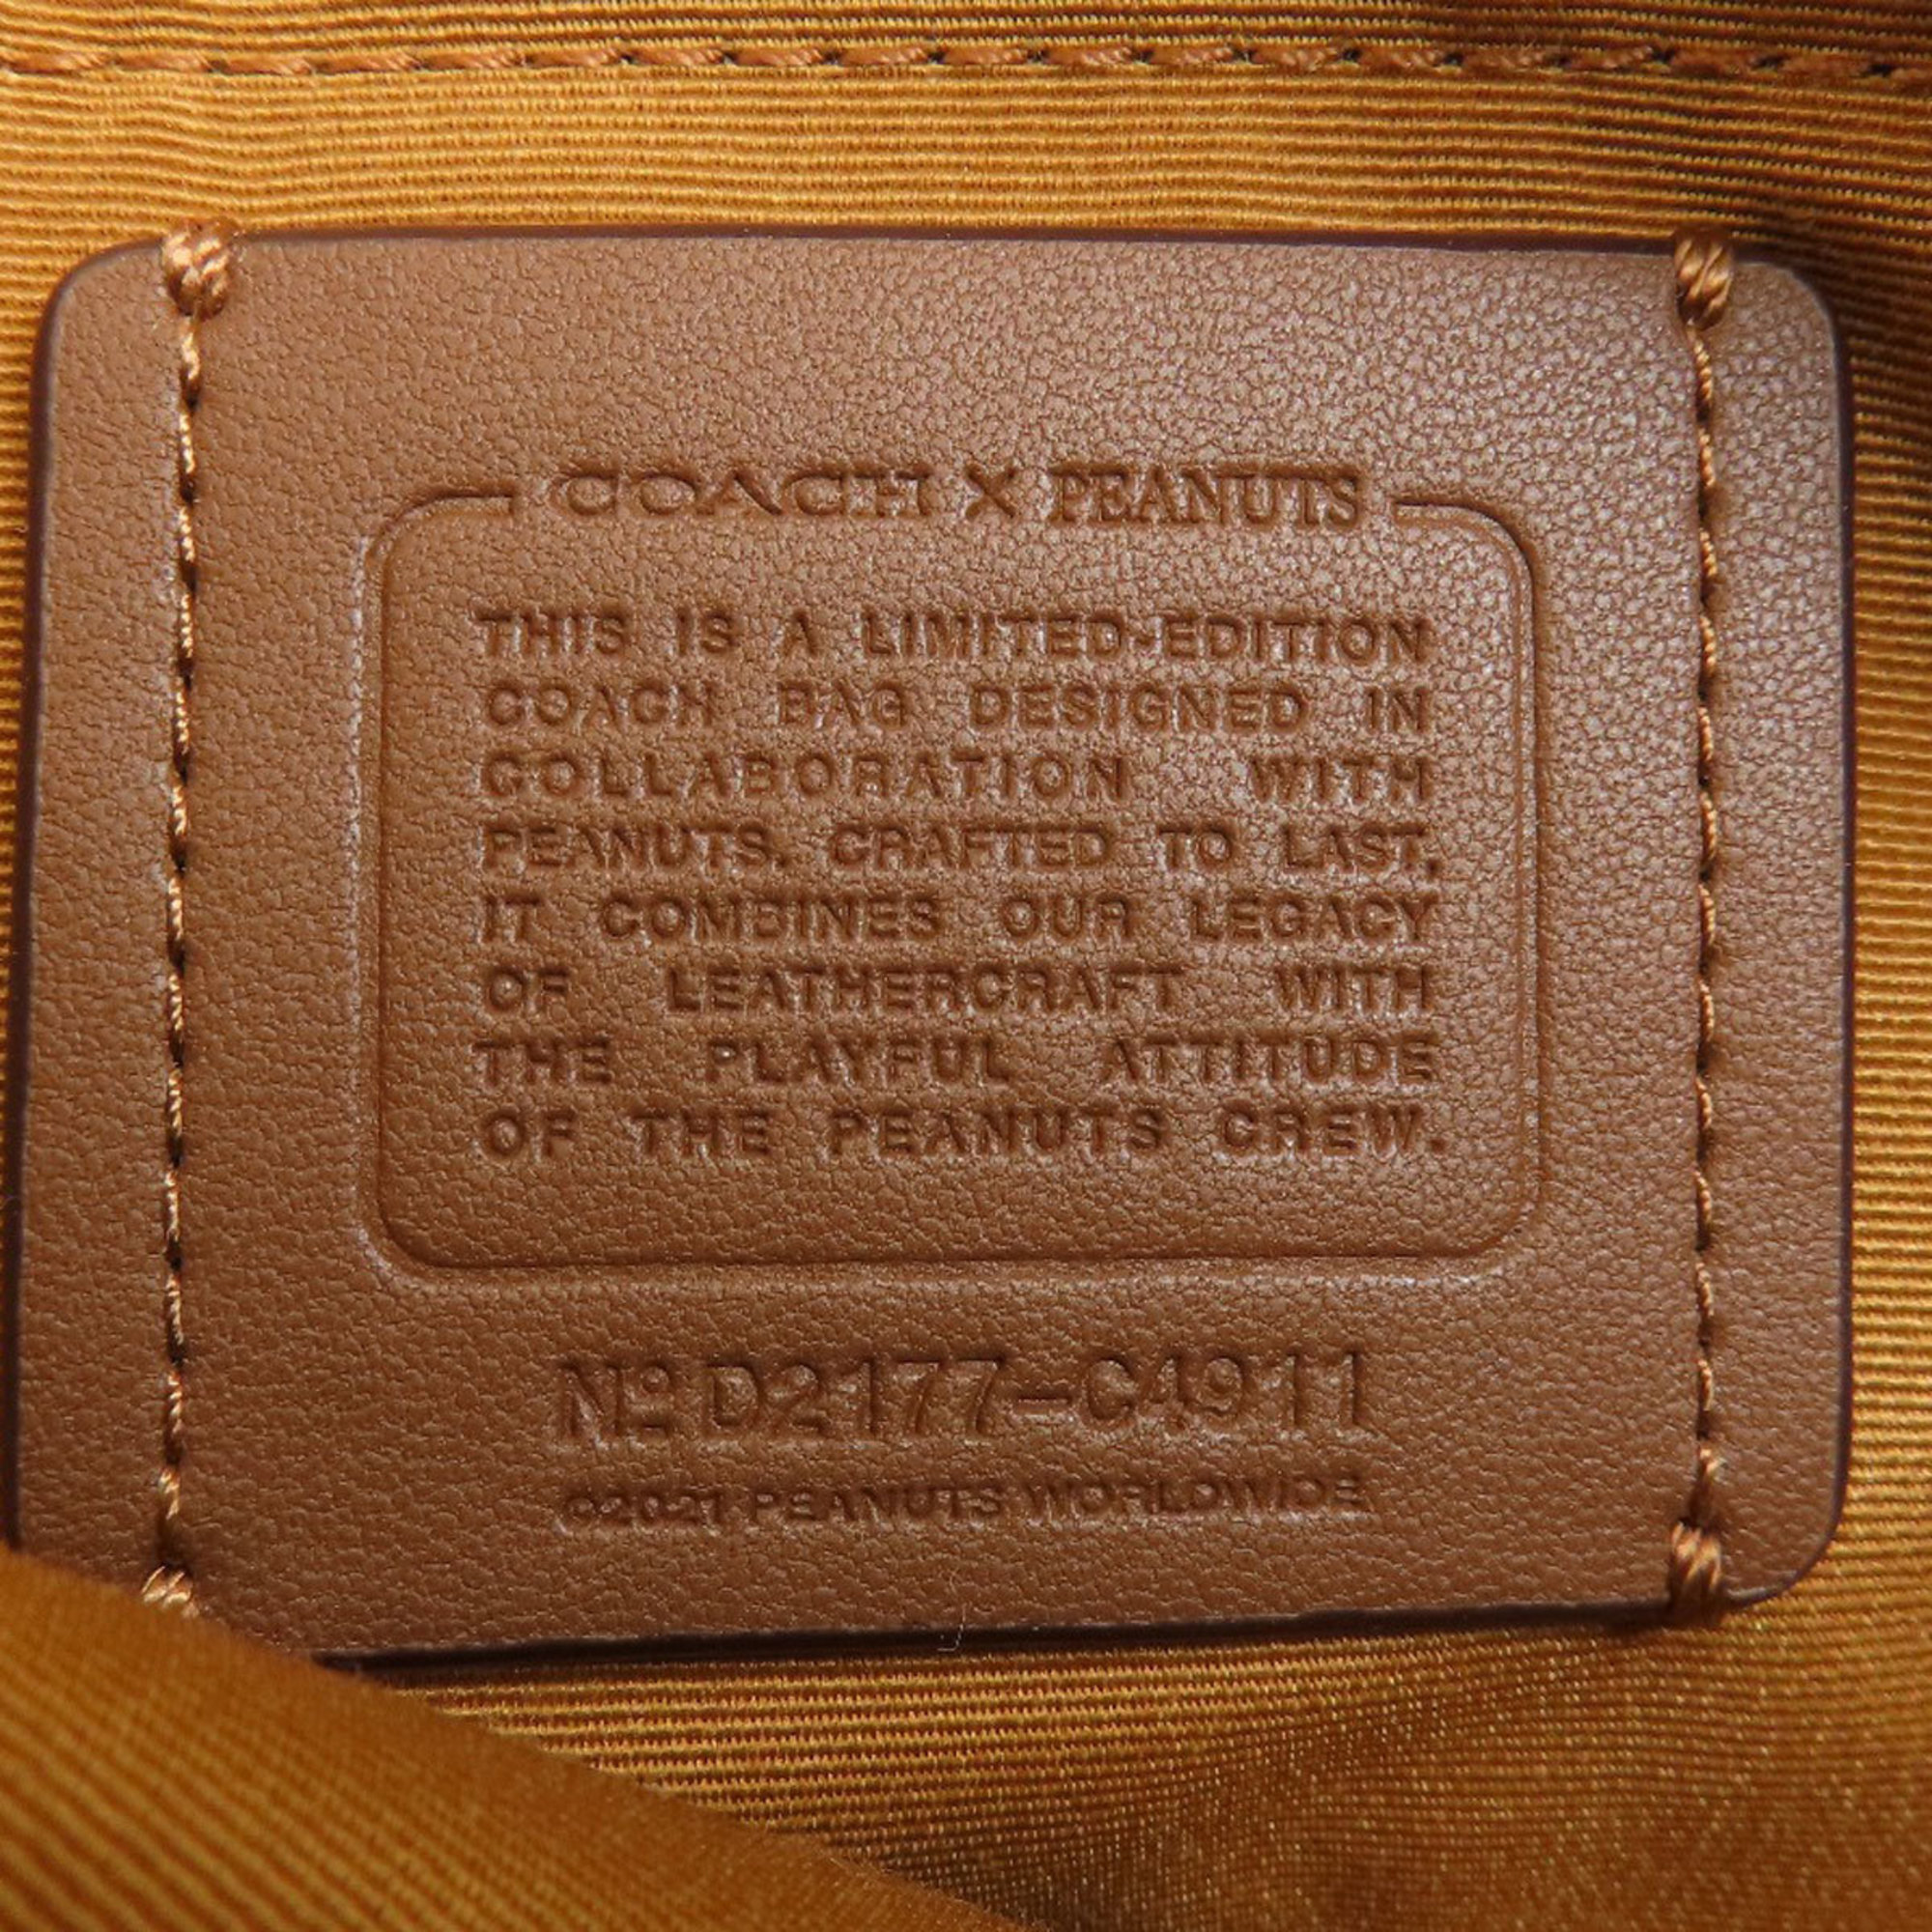 Coach C4911 Peanuts Collaboration Shoulder Bag Leather Women's COACH